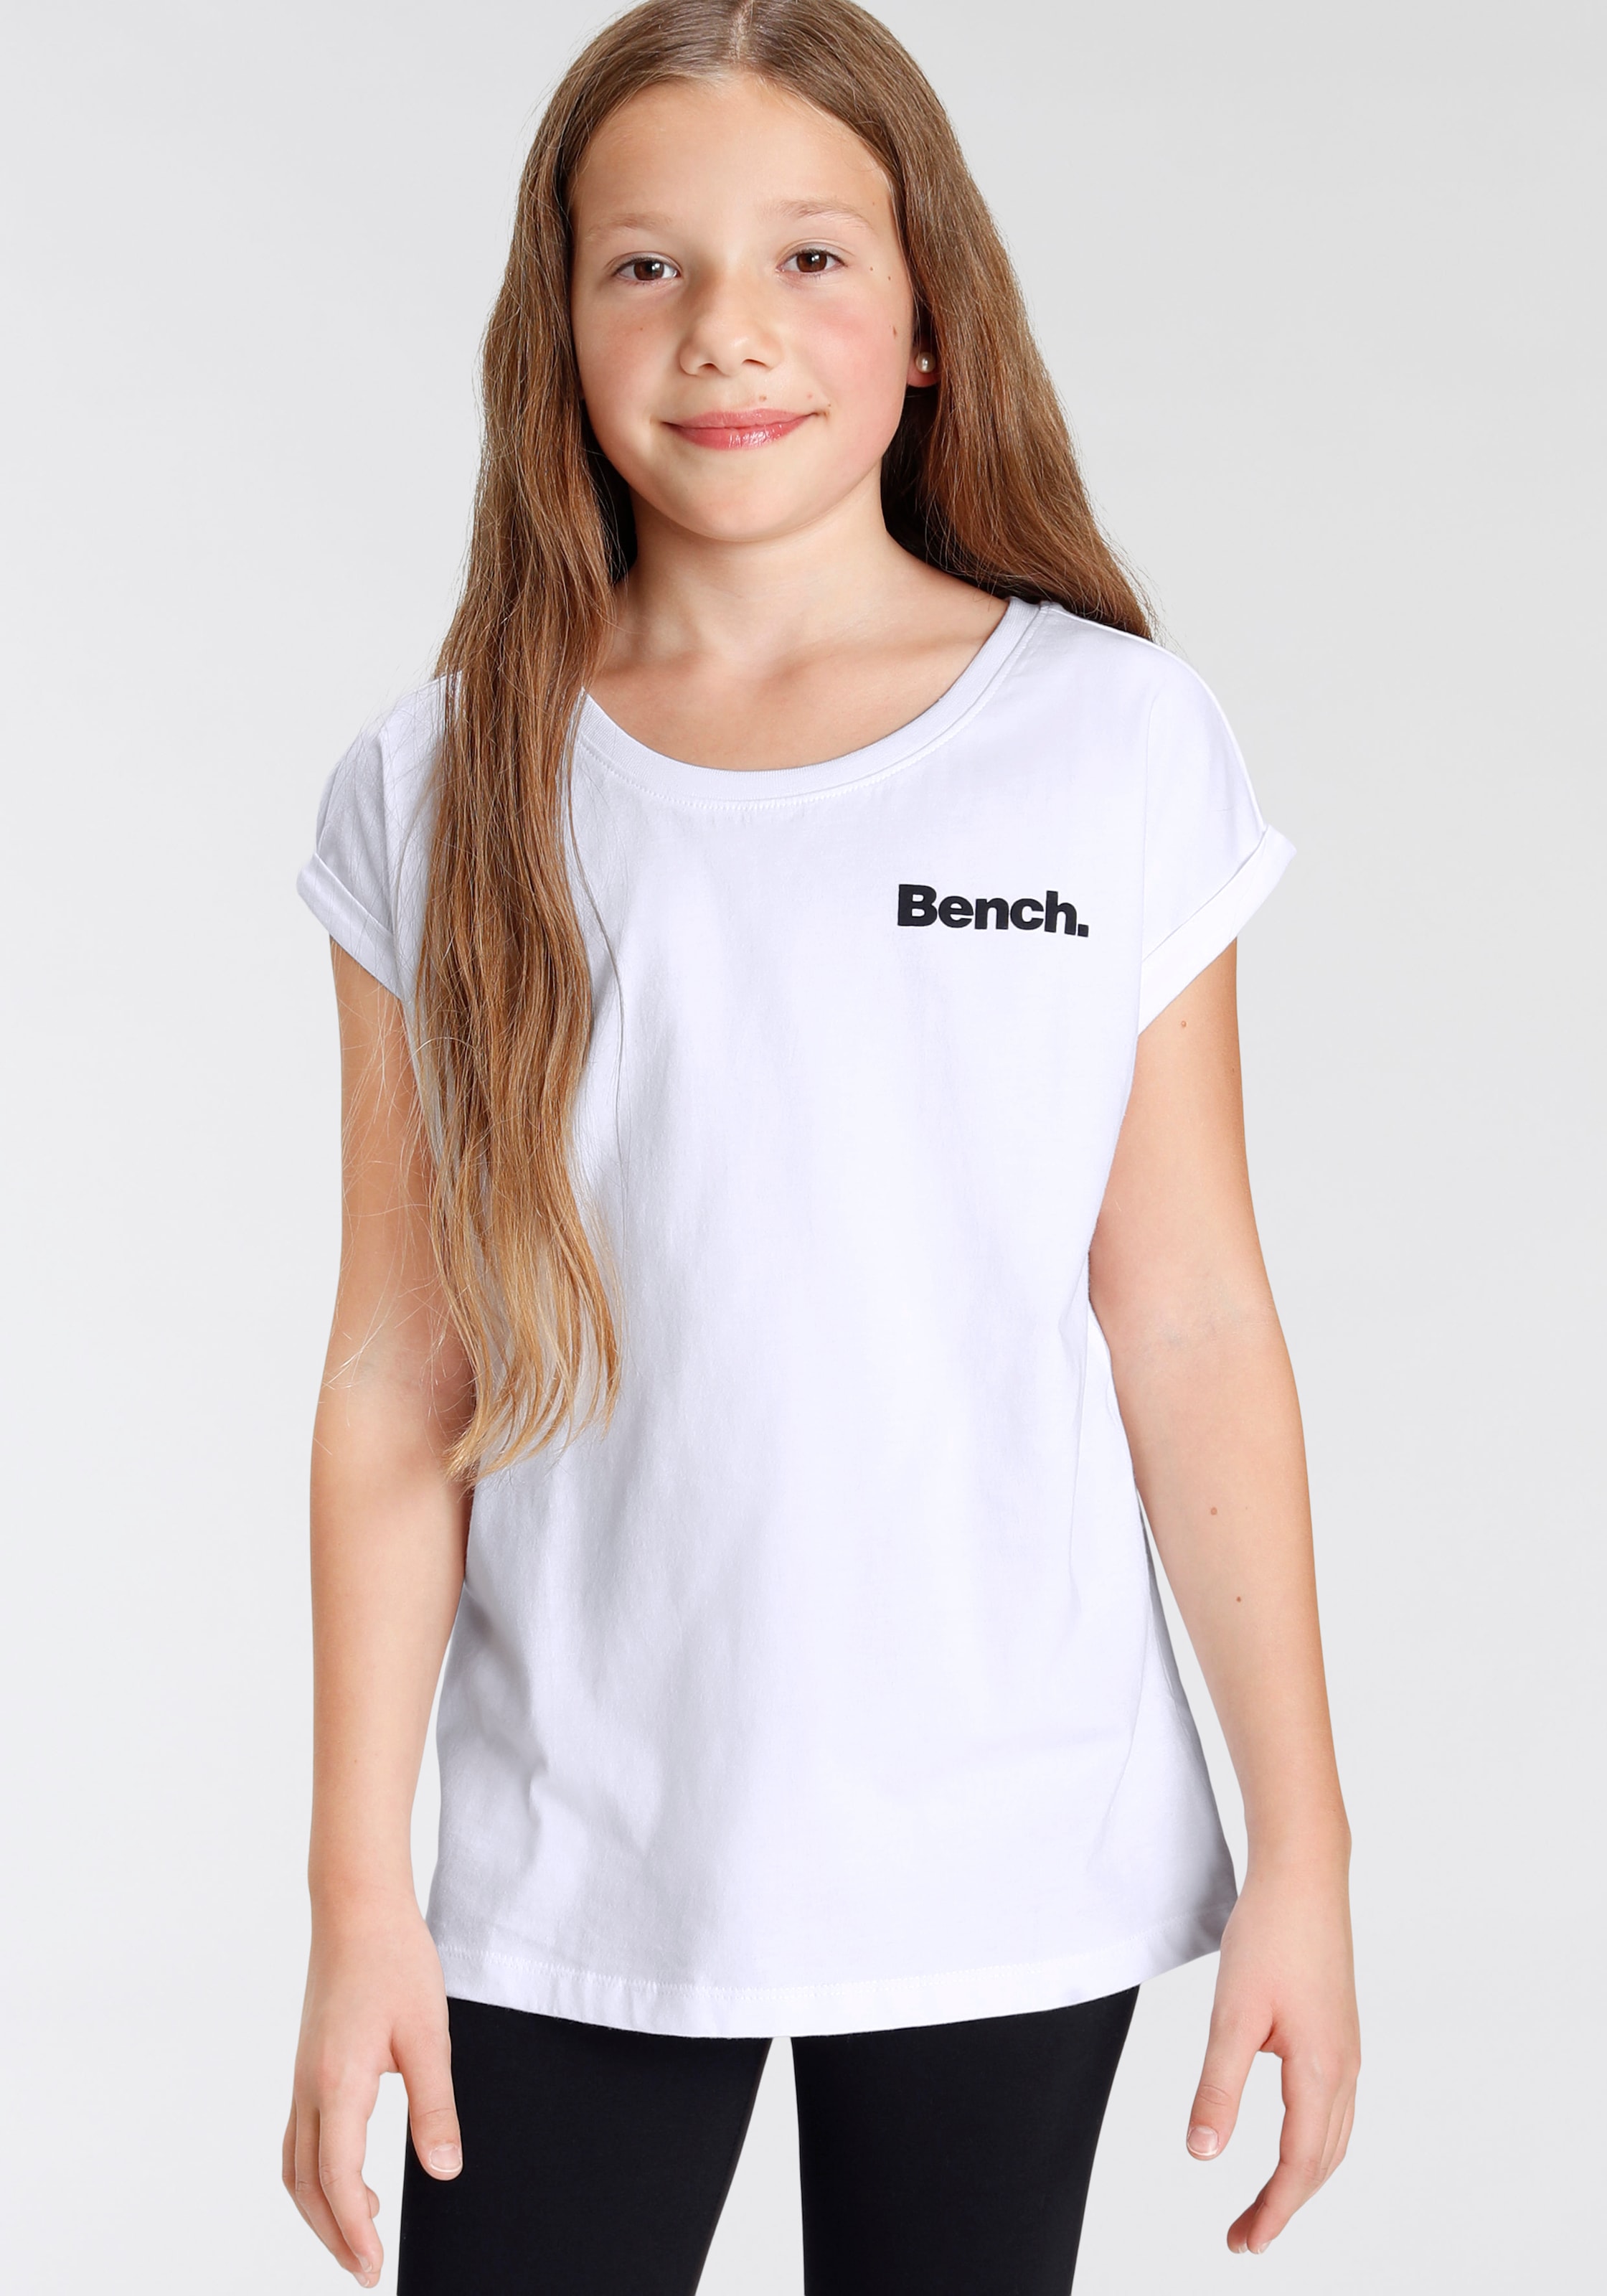 Bench. T-Shirt, mit ♕ bei Fotodruck